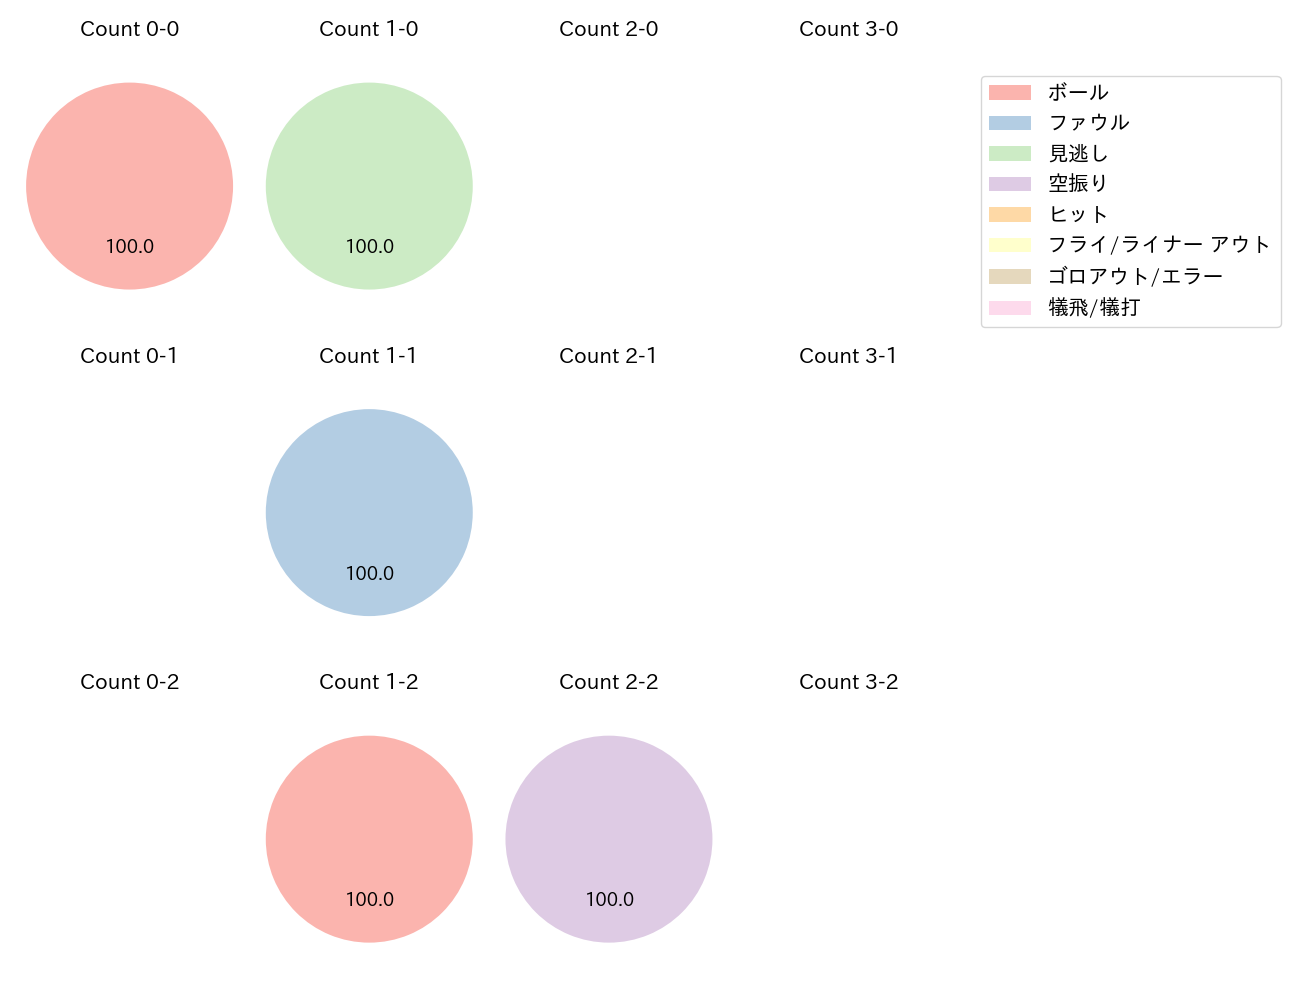 曽谷 龍平の球数分布(2023年6月)